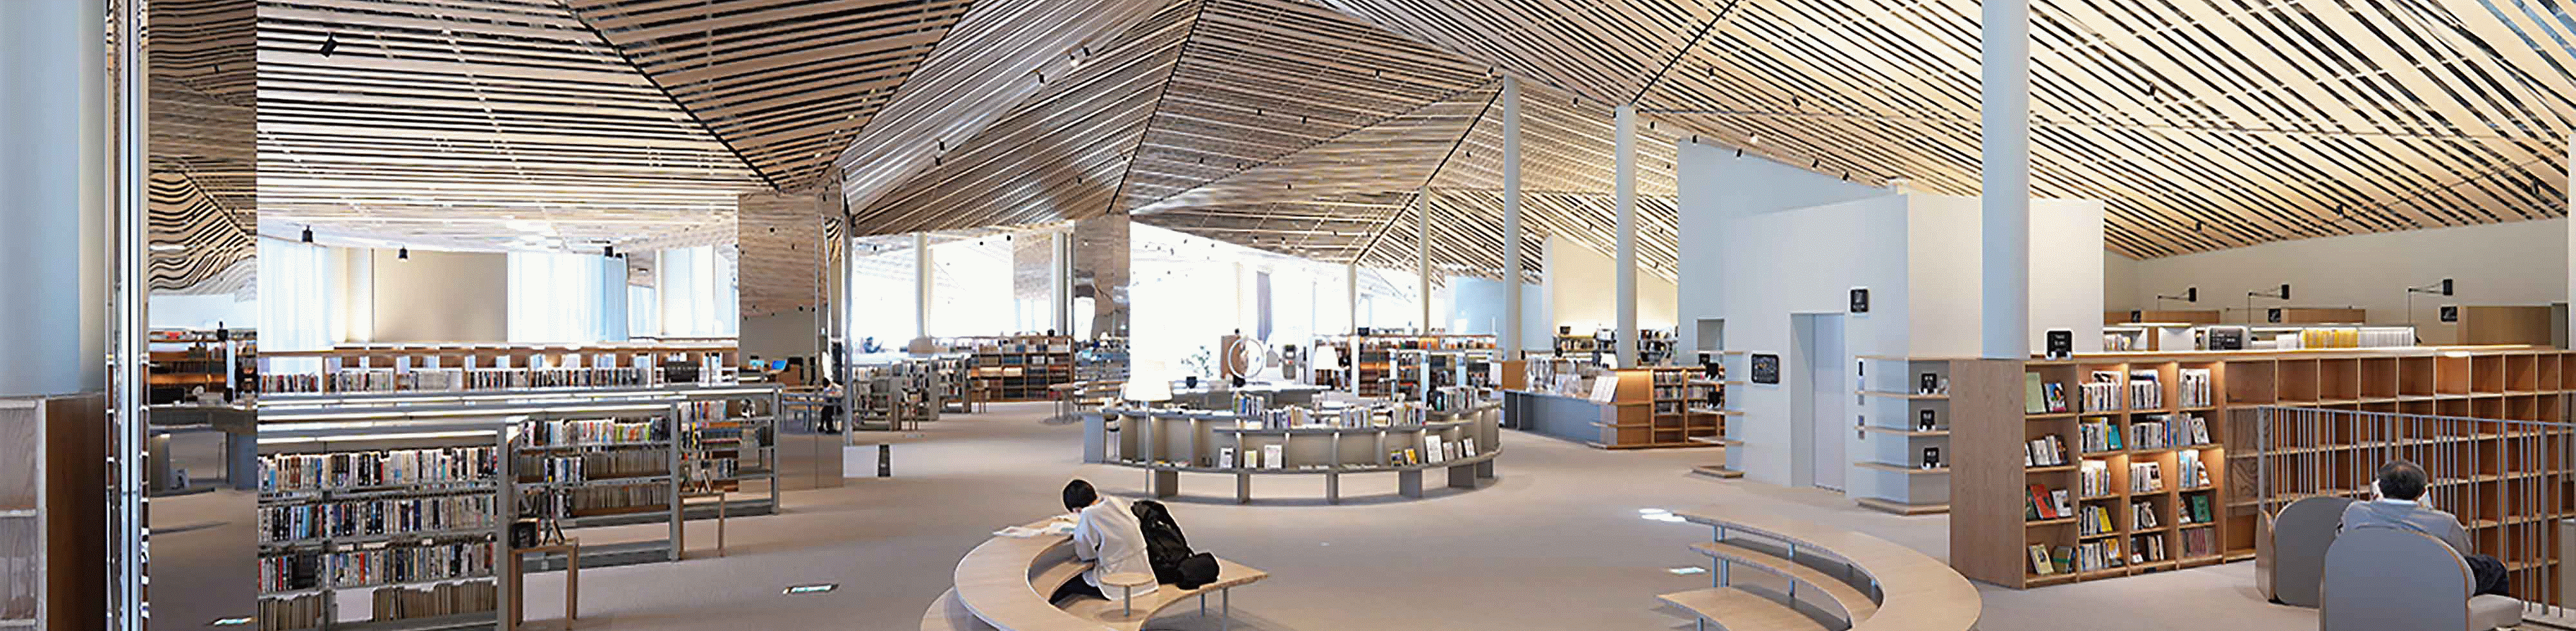 תמונה של החלל הפנימי של ספרייה גדולה בעלת עיצוב מרוב פרטים שכולל חיפוי עץ בתקרה, ברזולוציה מפינה לפינה